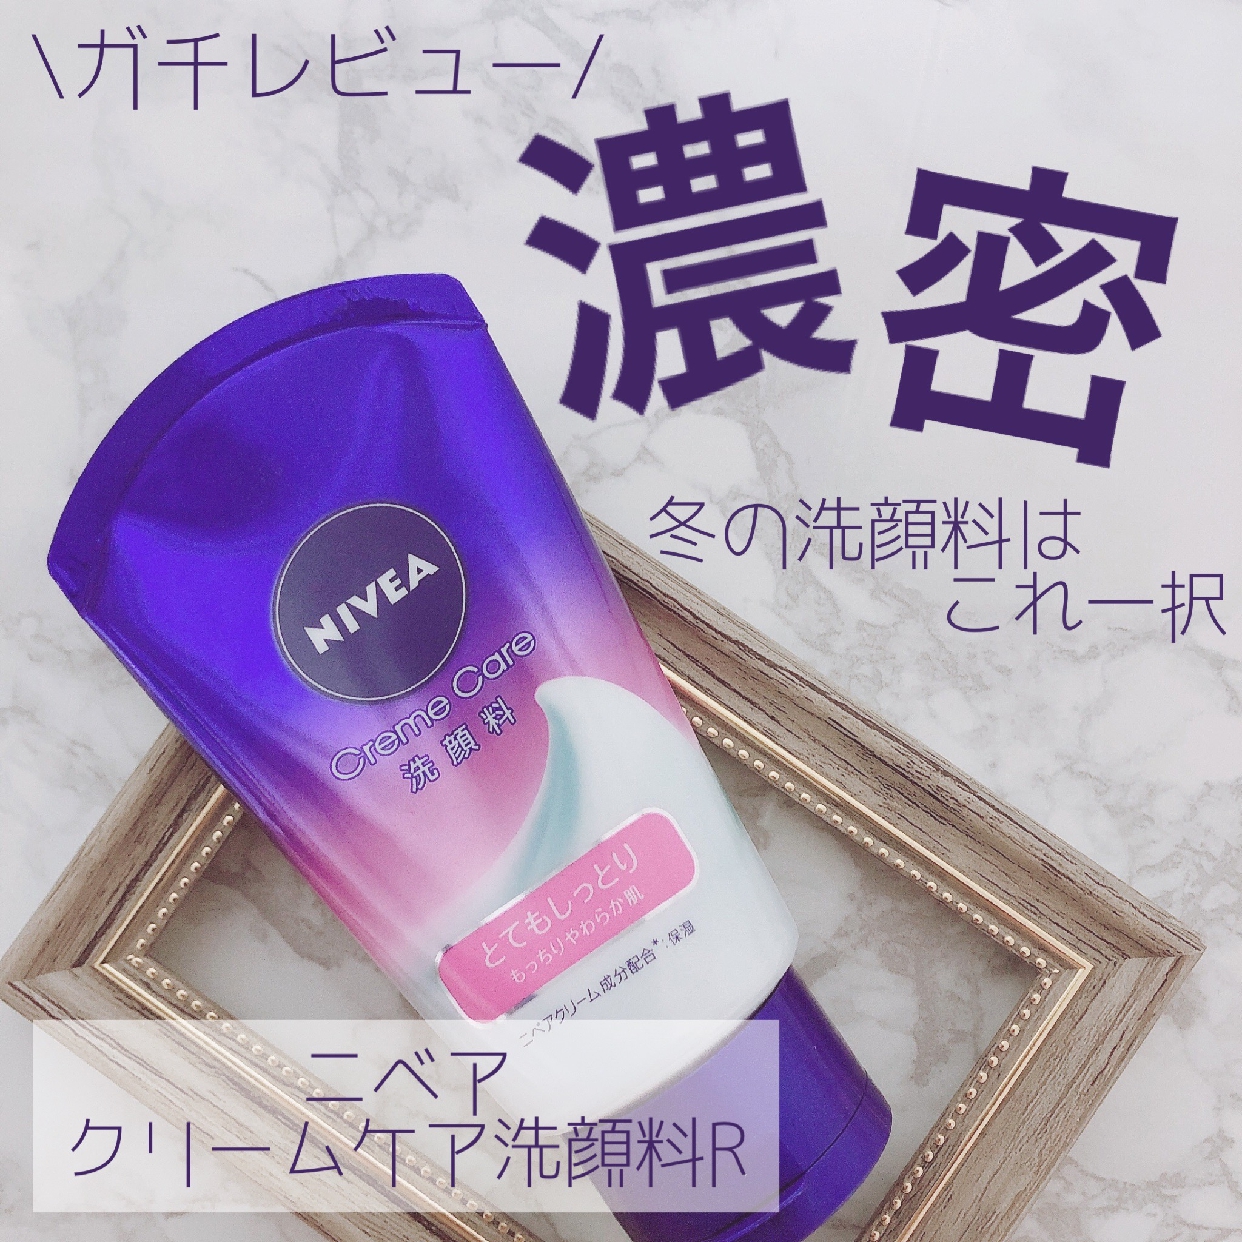 NIVEA(ニベア) クリームケア 洗顔料 とてもしっとりの良い点・メリットに関するばぶちゅう?໒꒱· ﾟさんの口コミ画像1